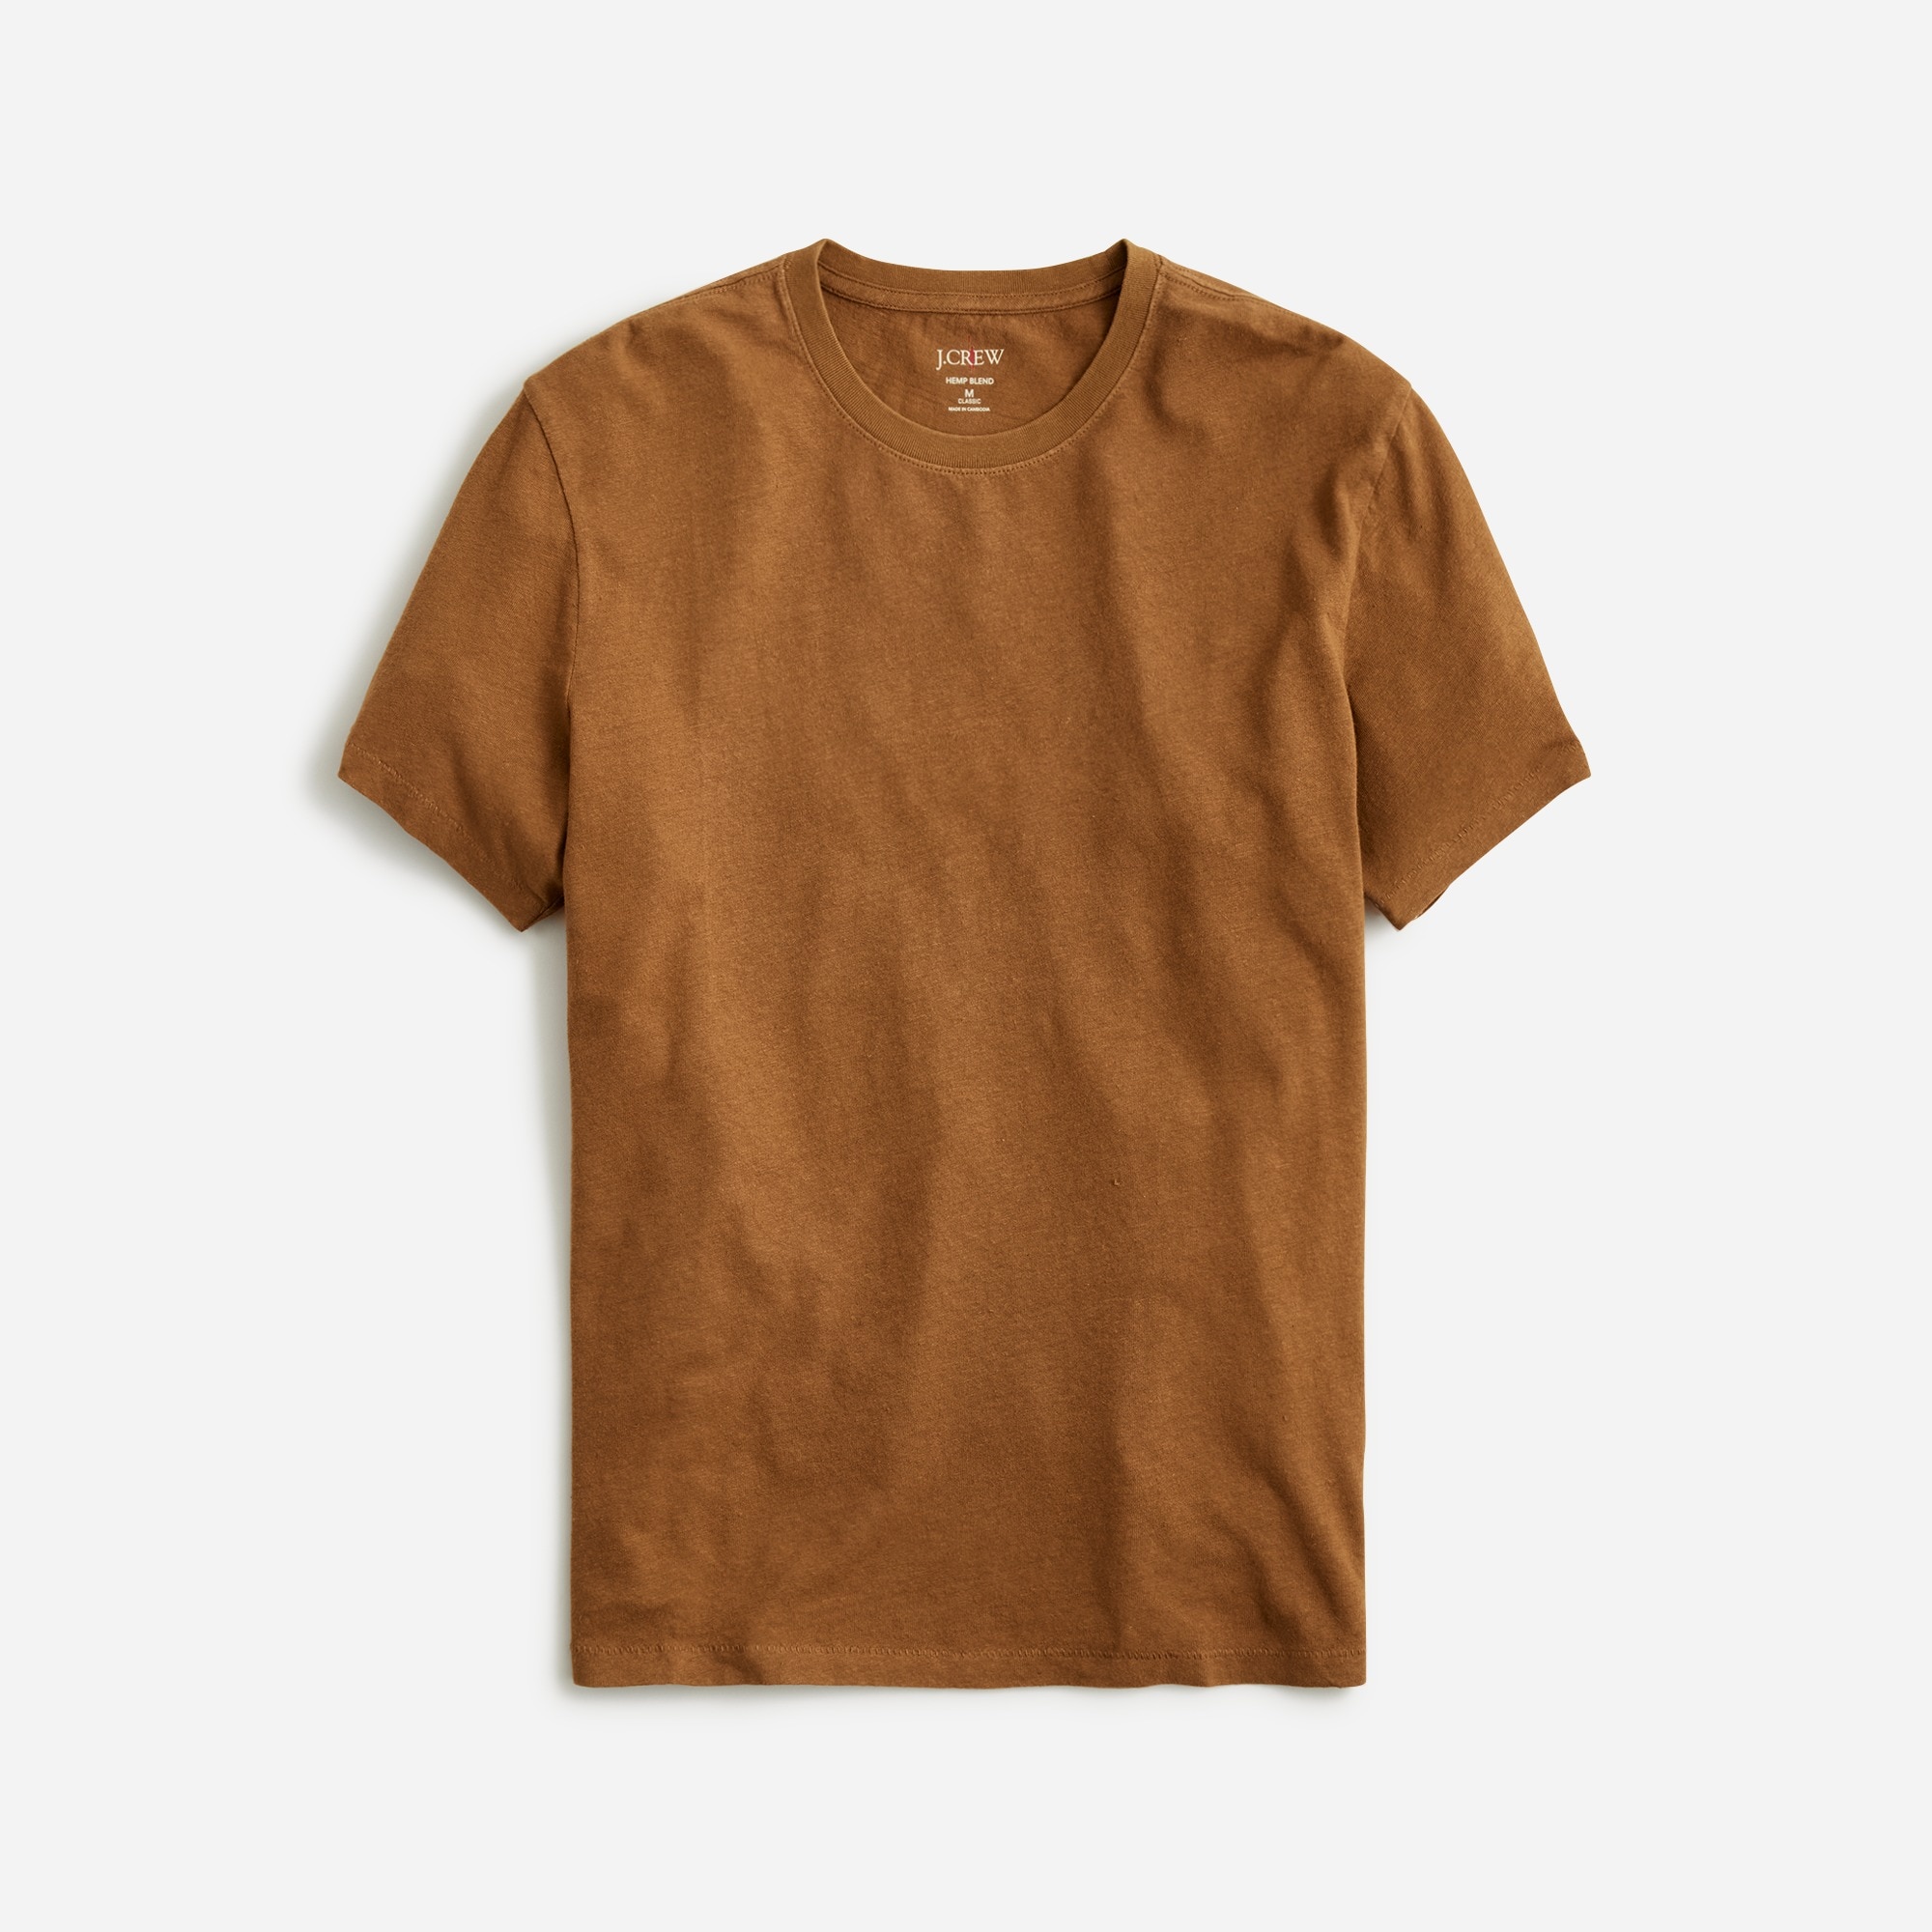 mens Tall hemp-organic cotton blend T-shirt